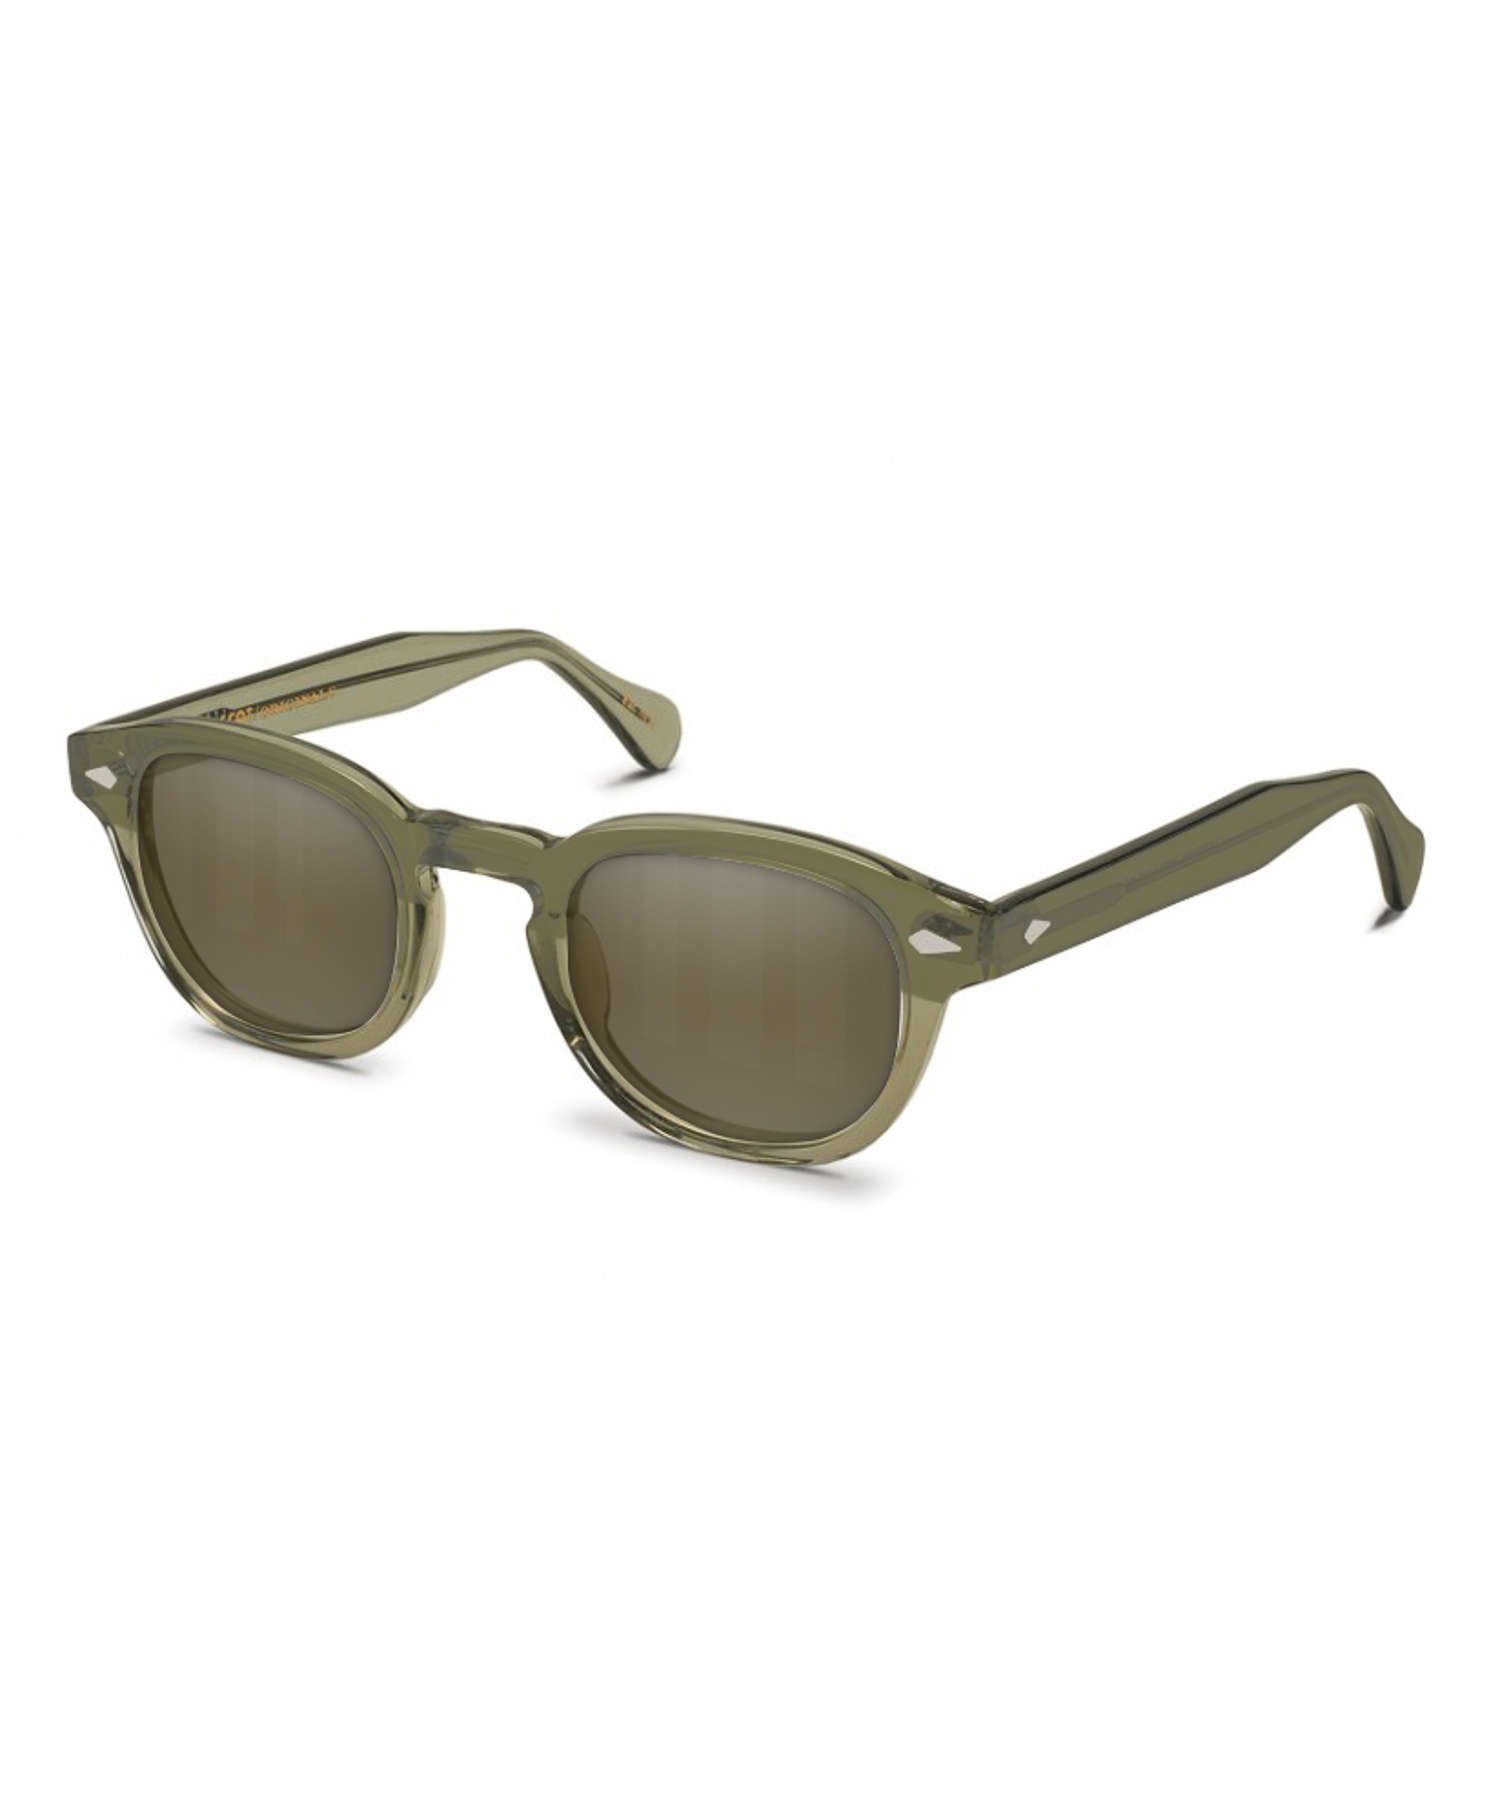 Moscot Lemtosh Sunglasses In Olive The Fashionisto